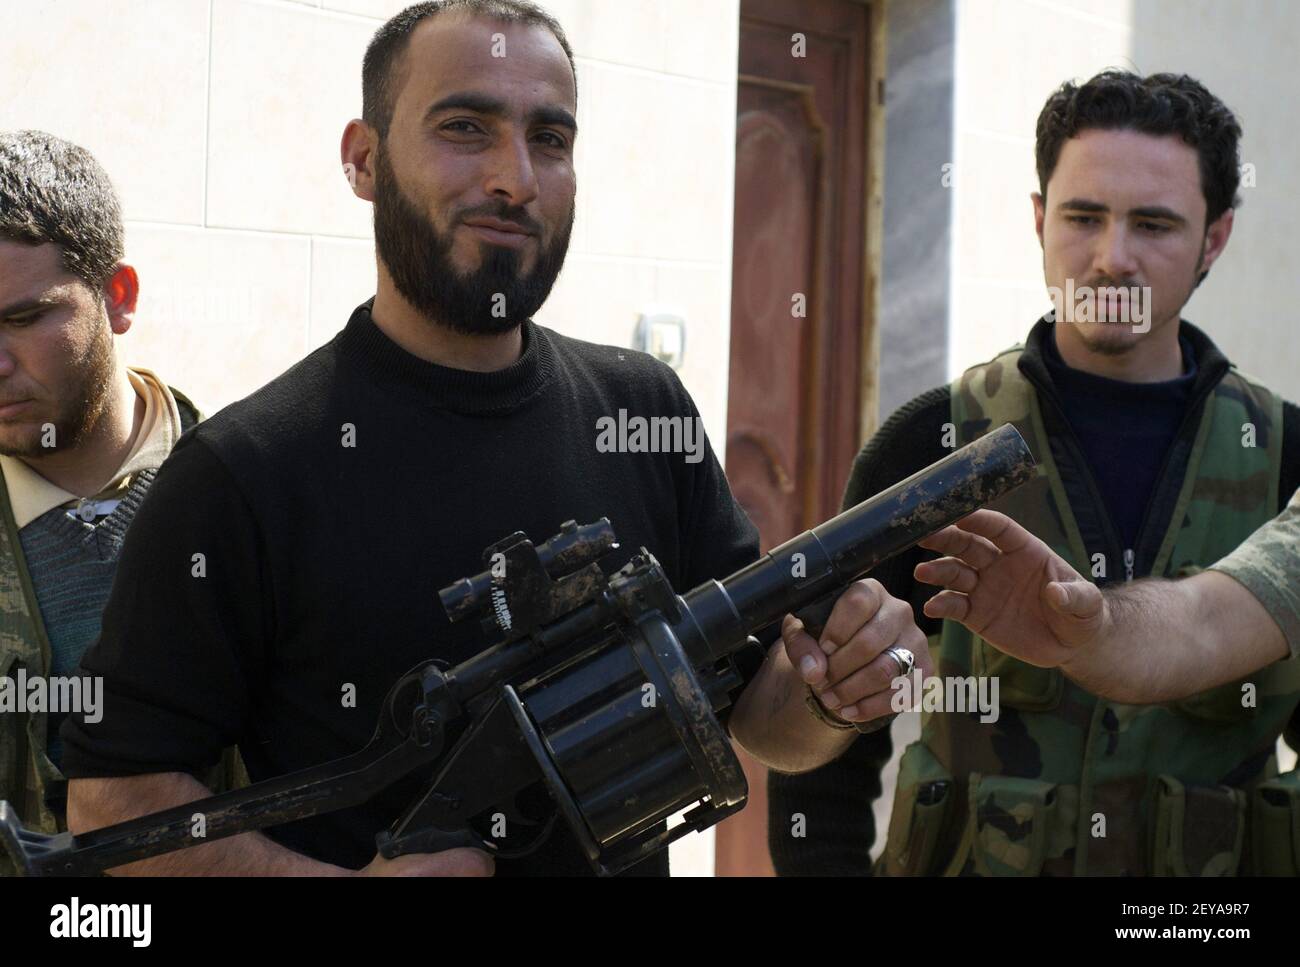 27 févr. 2013 - Kfar Nbouda, - UN rebelle syrien dans la ville syrienne centrale de Kfar Nbouda détient un lanceur de grenade RBG-6 serbe, qui fait partie d'une récente expédition d'armes aux rebelles syriens par le gouvernement saoudien, le 27 février 2013. Les armes étaient destinées aux groupes rebelles modérés, mais sont également apparues entre les mains de ceux qui appellent à la création d'un État islamique en Syrie. Crédit photo: David Enders/MCT/Sipa USA Banque D'Images